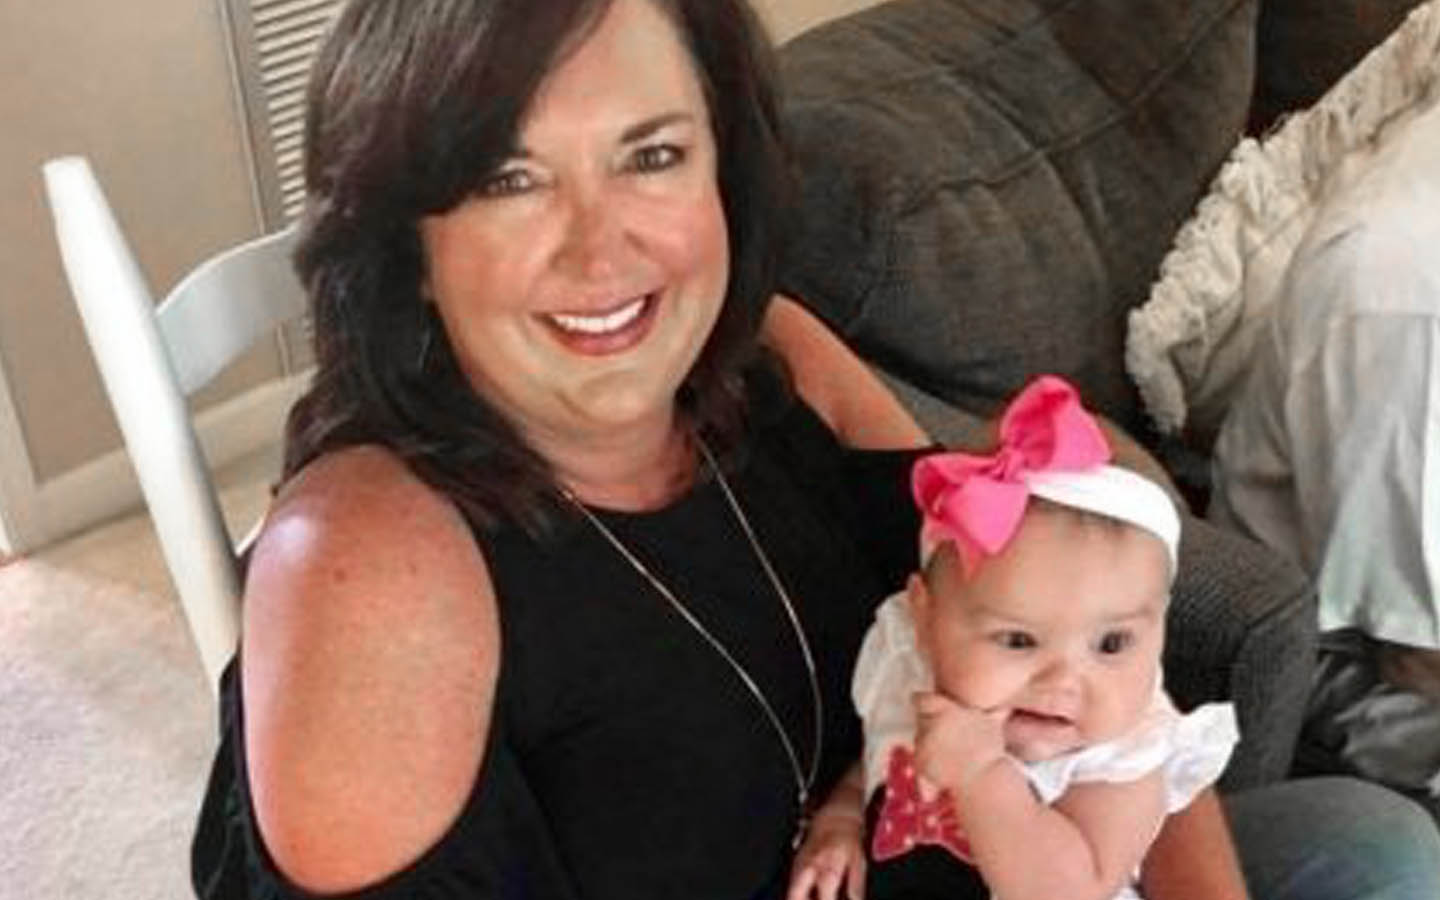 Implantatbruker Angie, poserer for et bilde med en baby